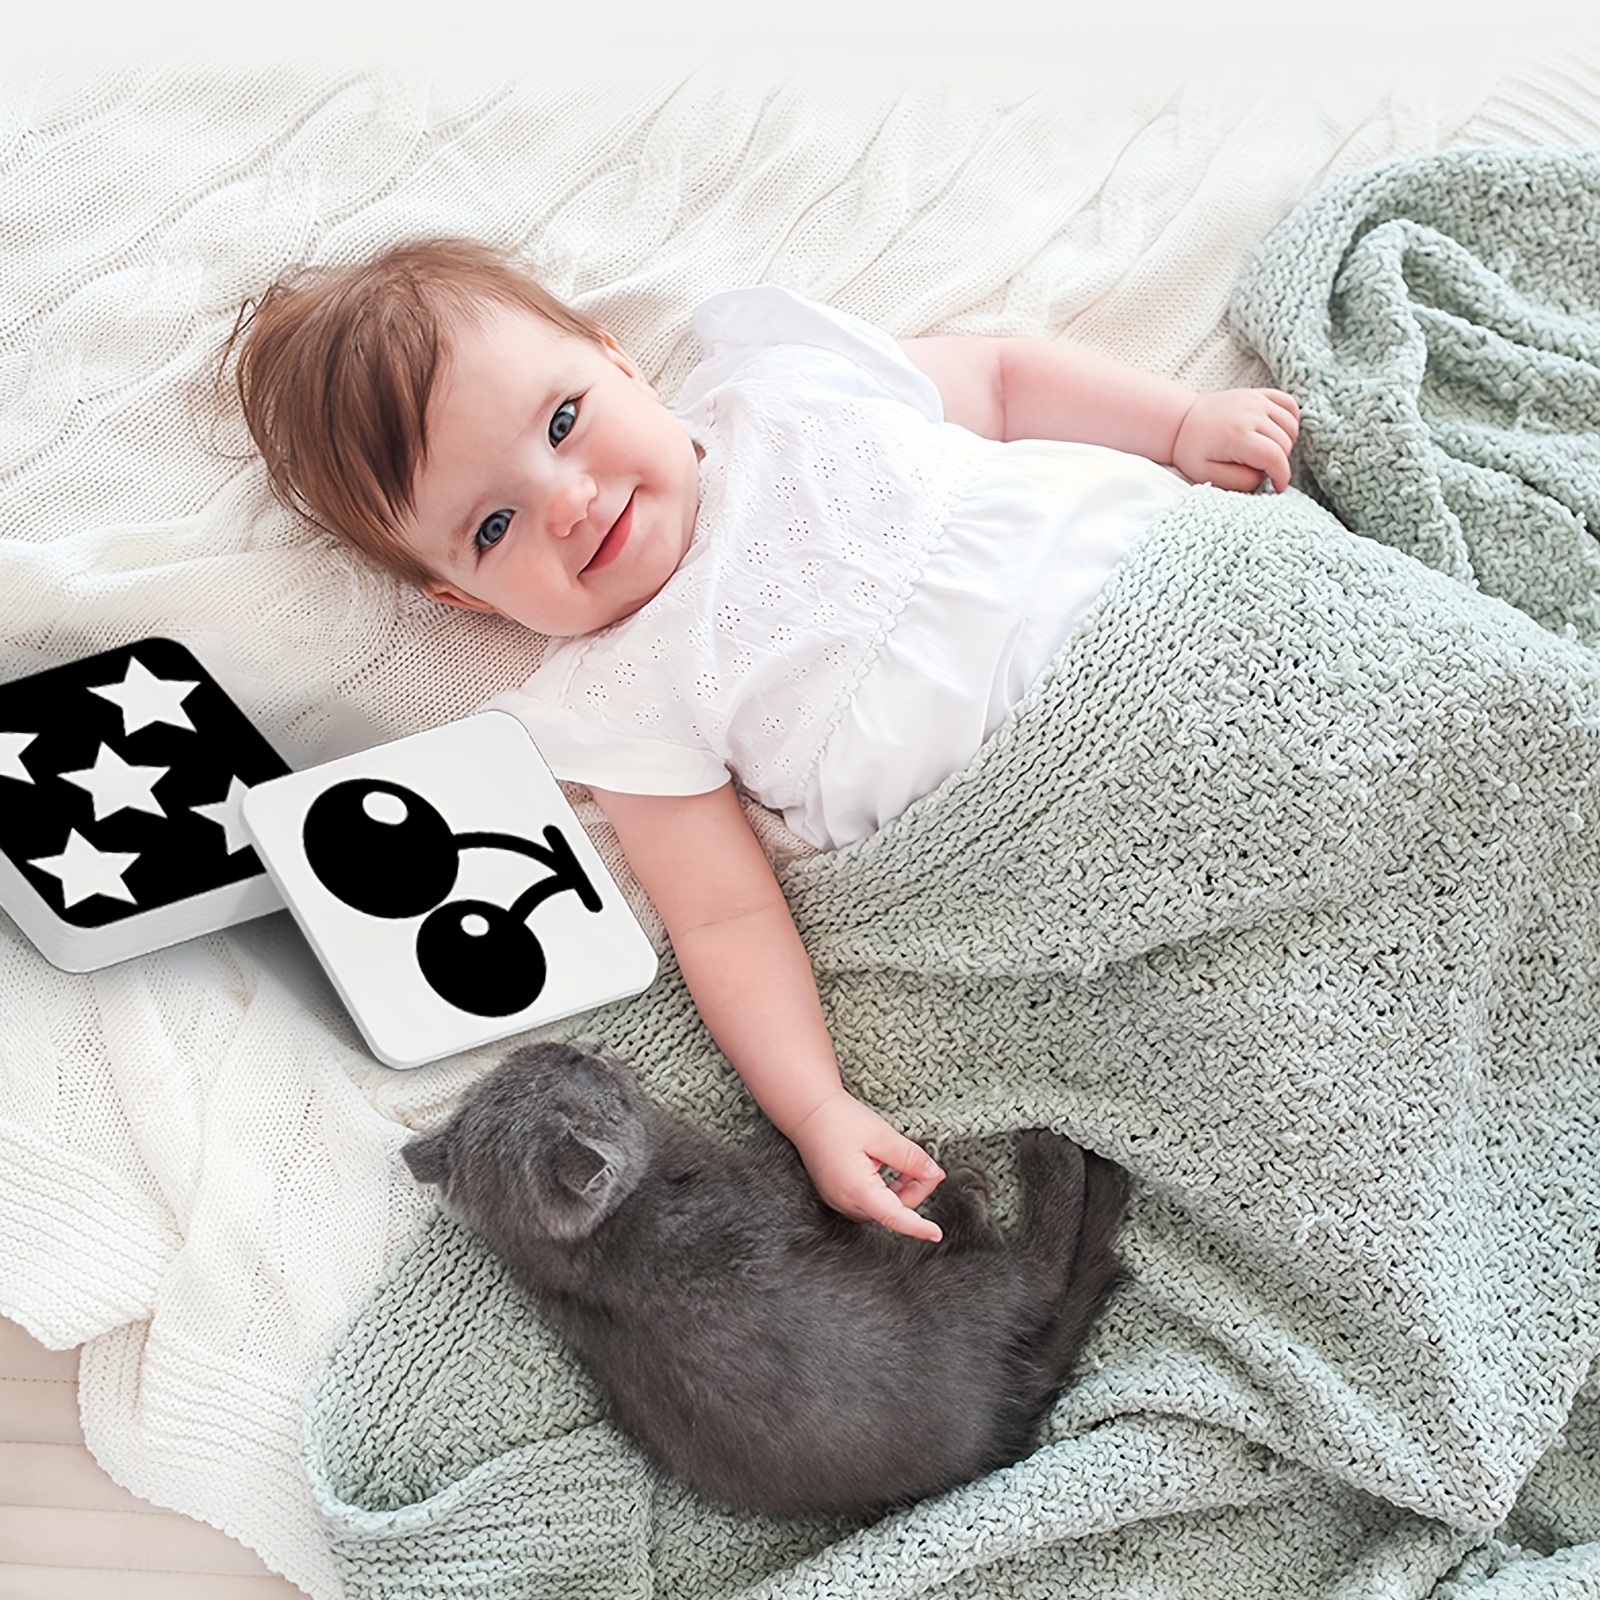  Flash Cards - Tarjetas de estimulación visual para bebés de  0-3-6-12-36 meses, 0-3 meses, juguetes para bebés recién nacidos, regalos  de 6 x 6 pulgadas, grandes para desarrollo sensorial, juego de